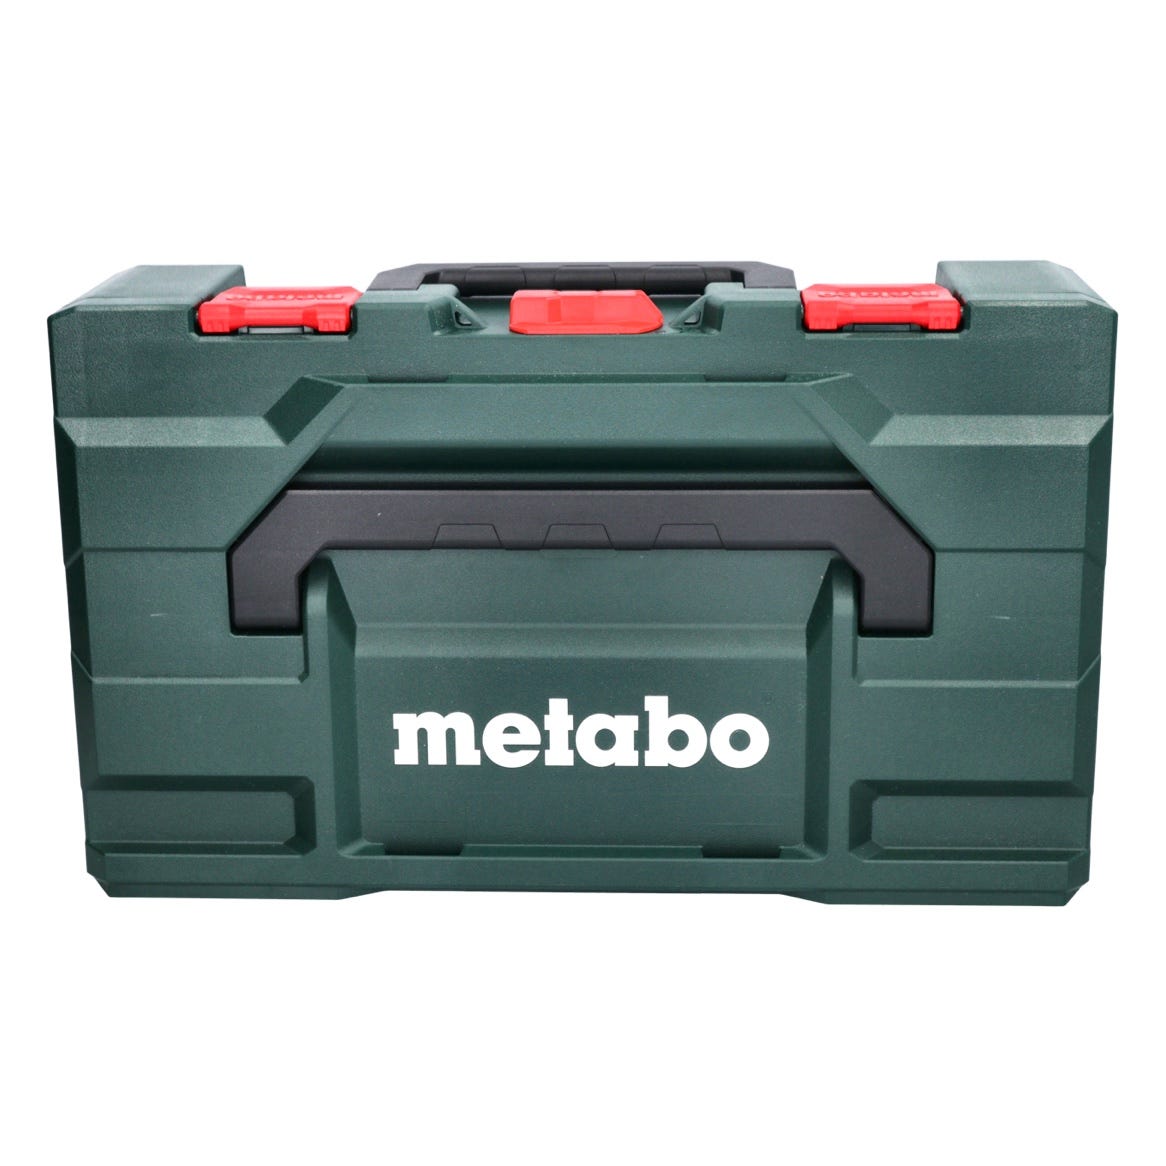 Metabo KH 18 LTX 24 Marteau sans fil 2,1J 18V SDS plus + 1x Batterie 4,0Ah + Coffret metaBOX - sans chargeur 2